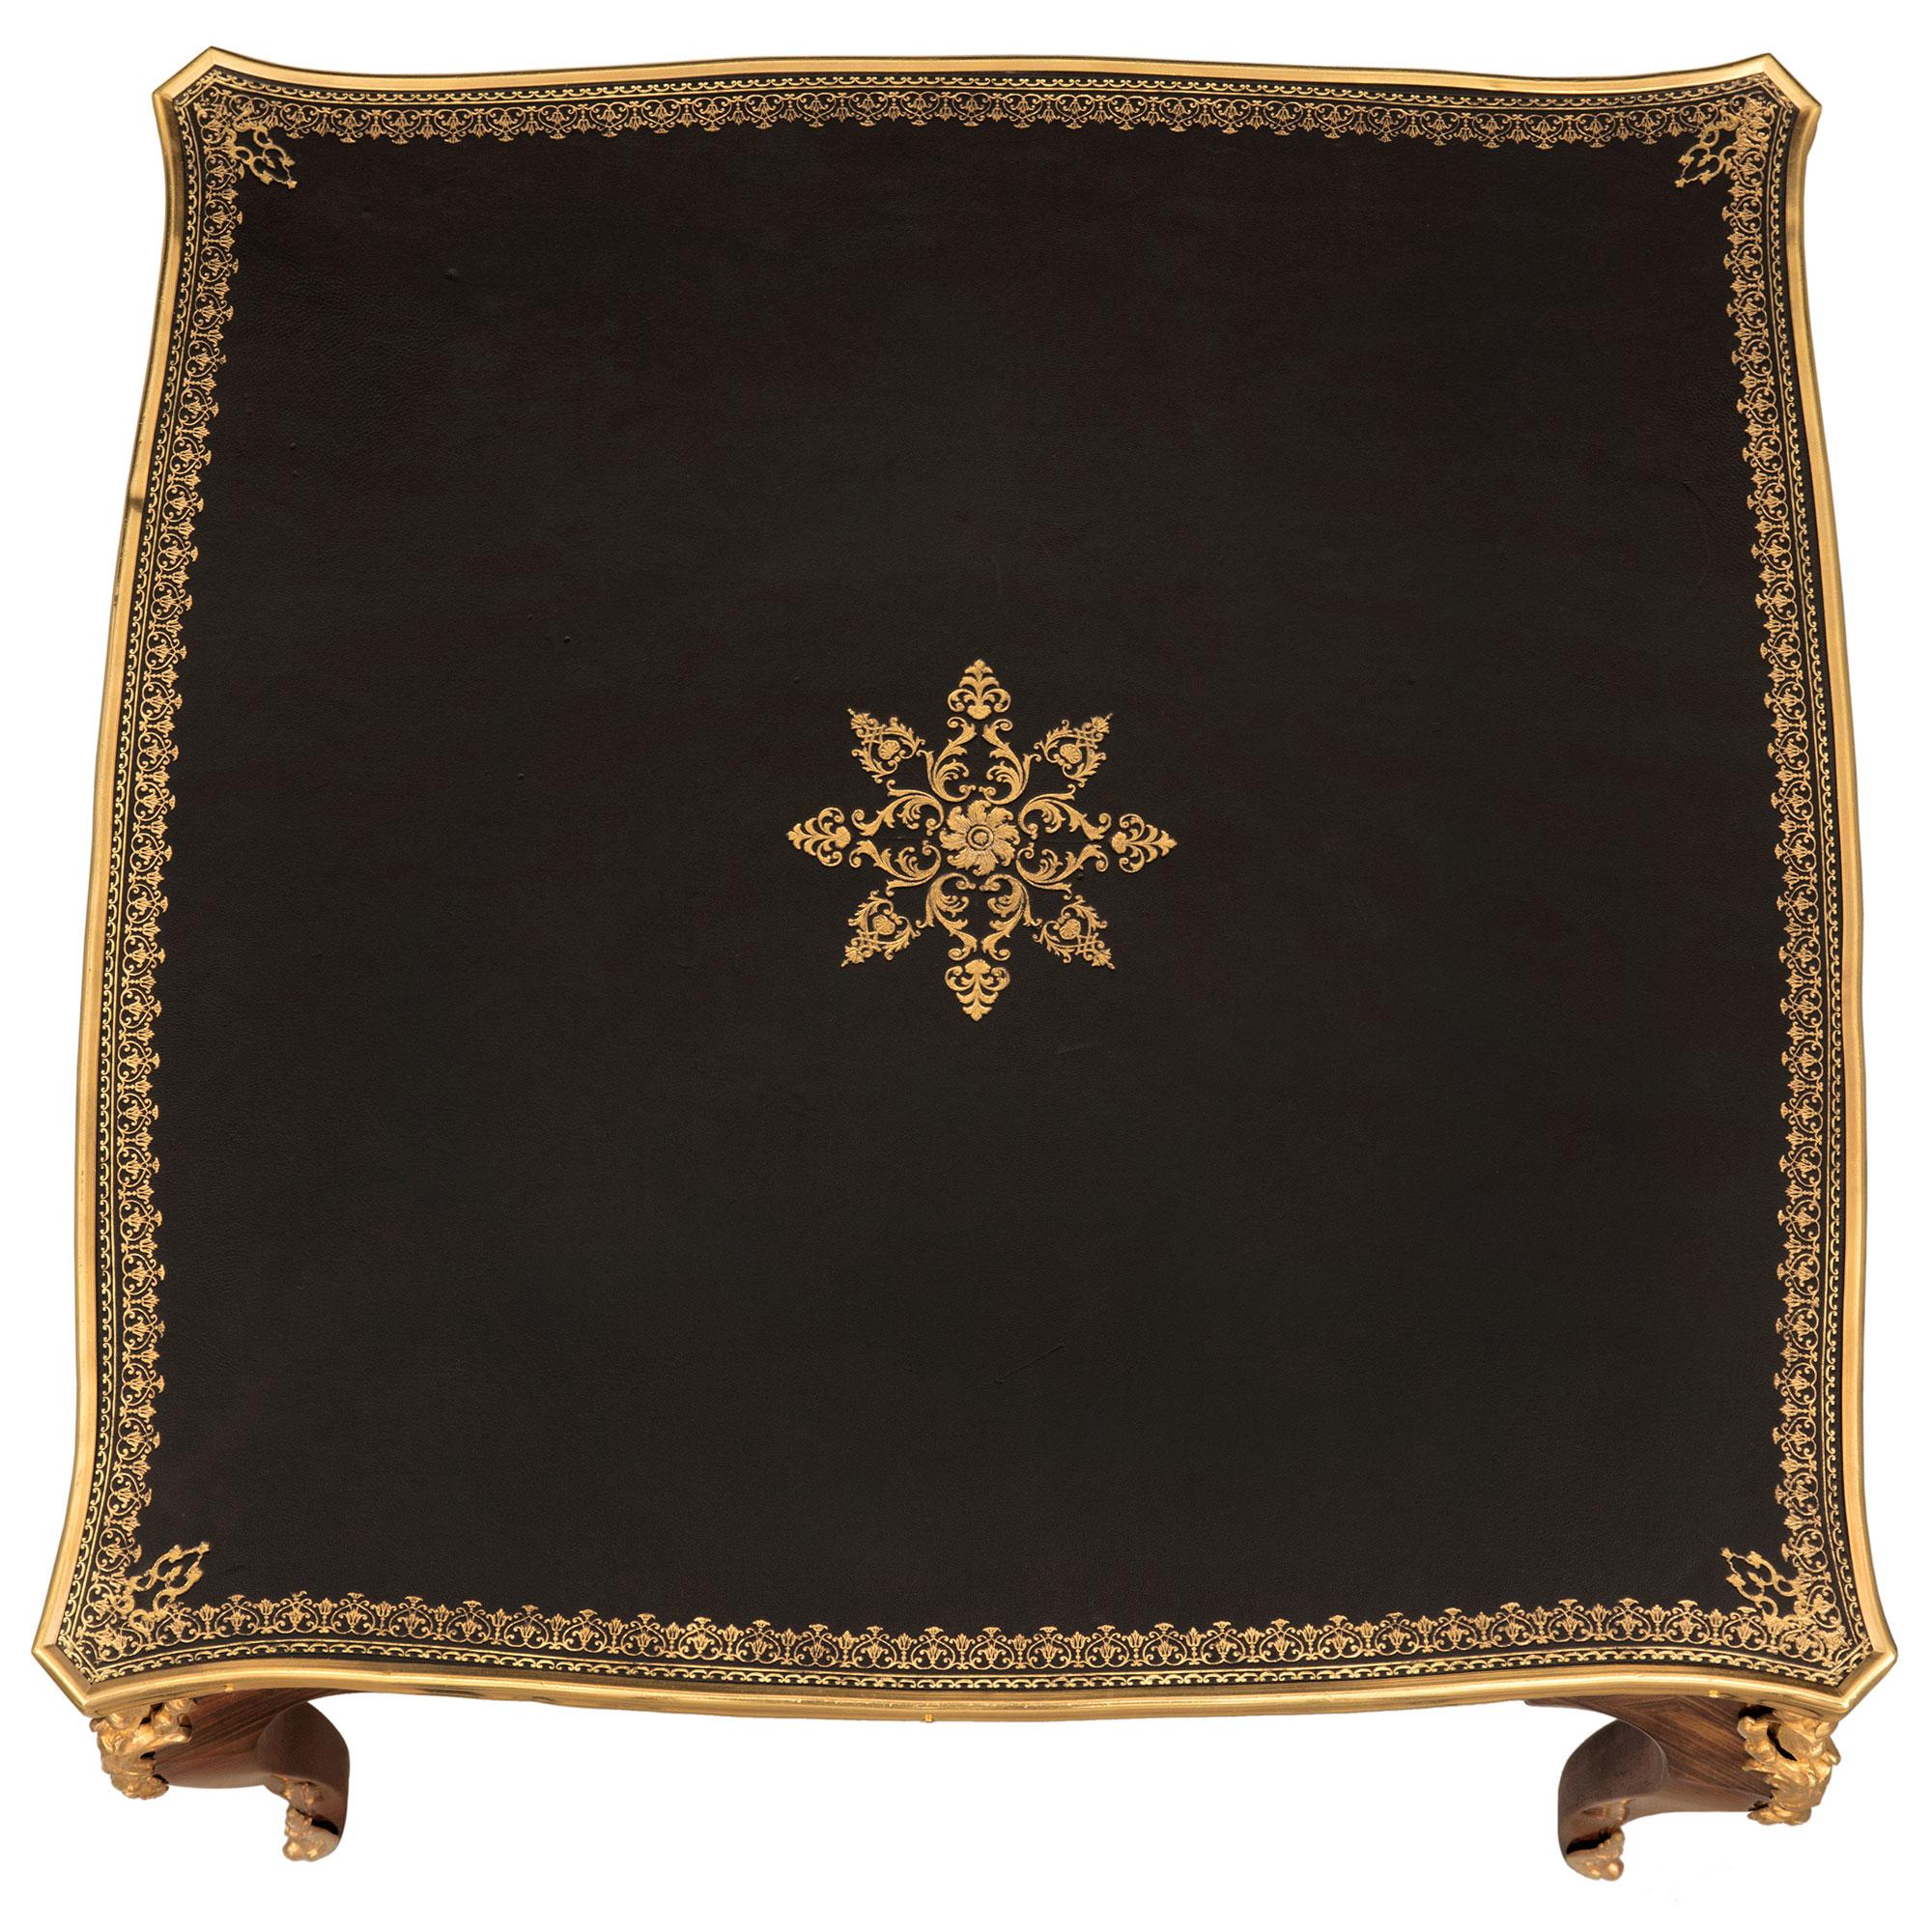 Une très élégante table basse française du 19ème siècle en bois de roi et bronze doré. La table carrée est surélevée par de minces pieds cabriole avec des sabots en bronze doré finement ciselé et de remarquables montures d'angle en forme de